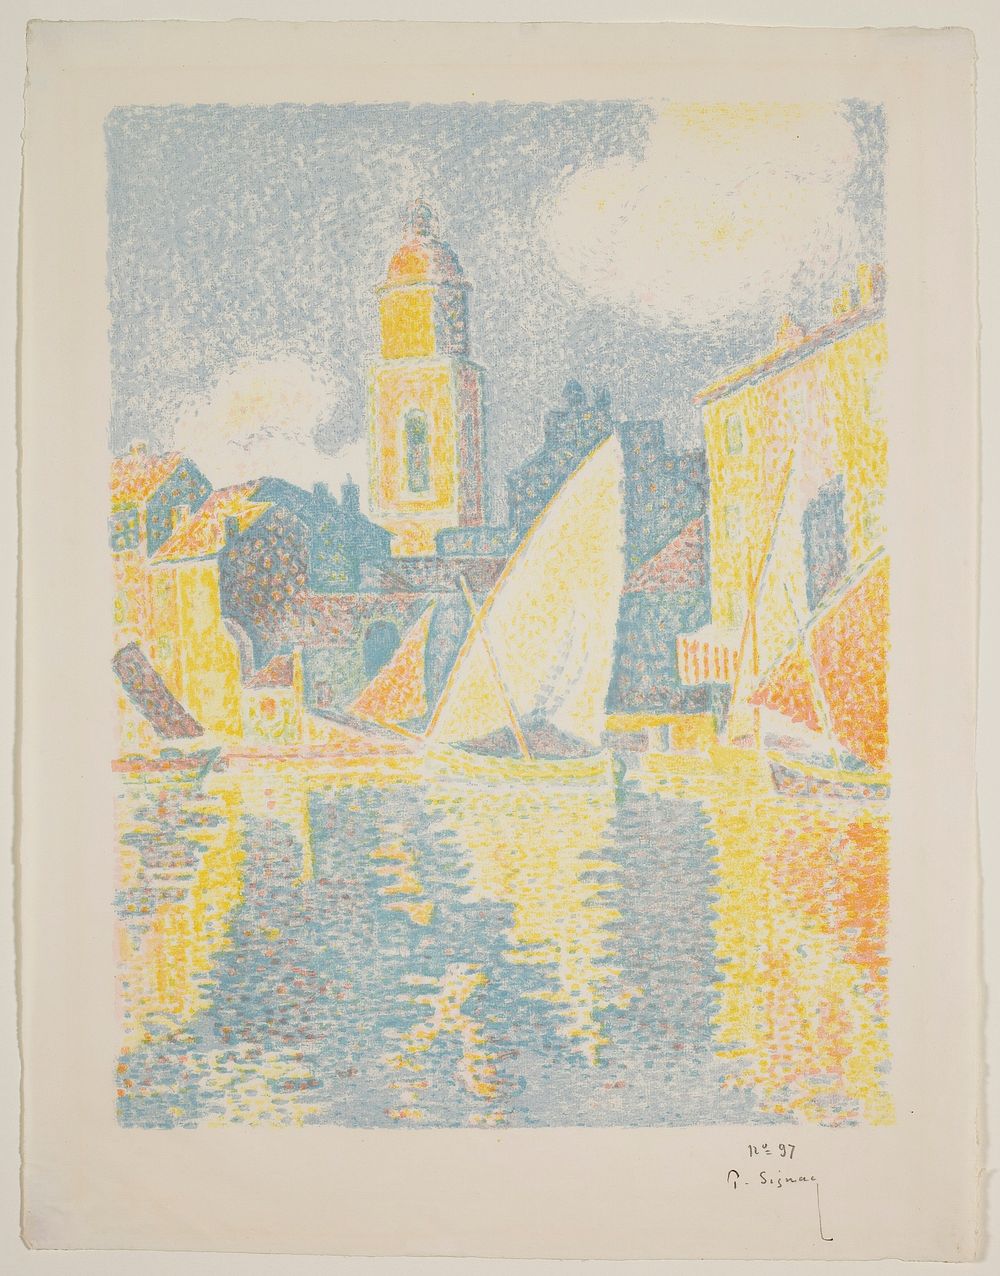 Paul Signac's The Port of St. Tropez